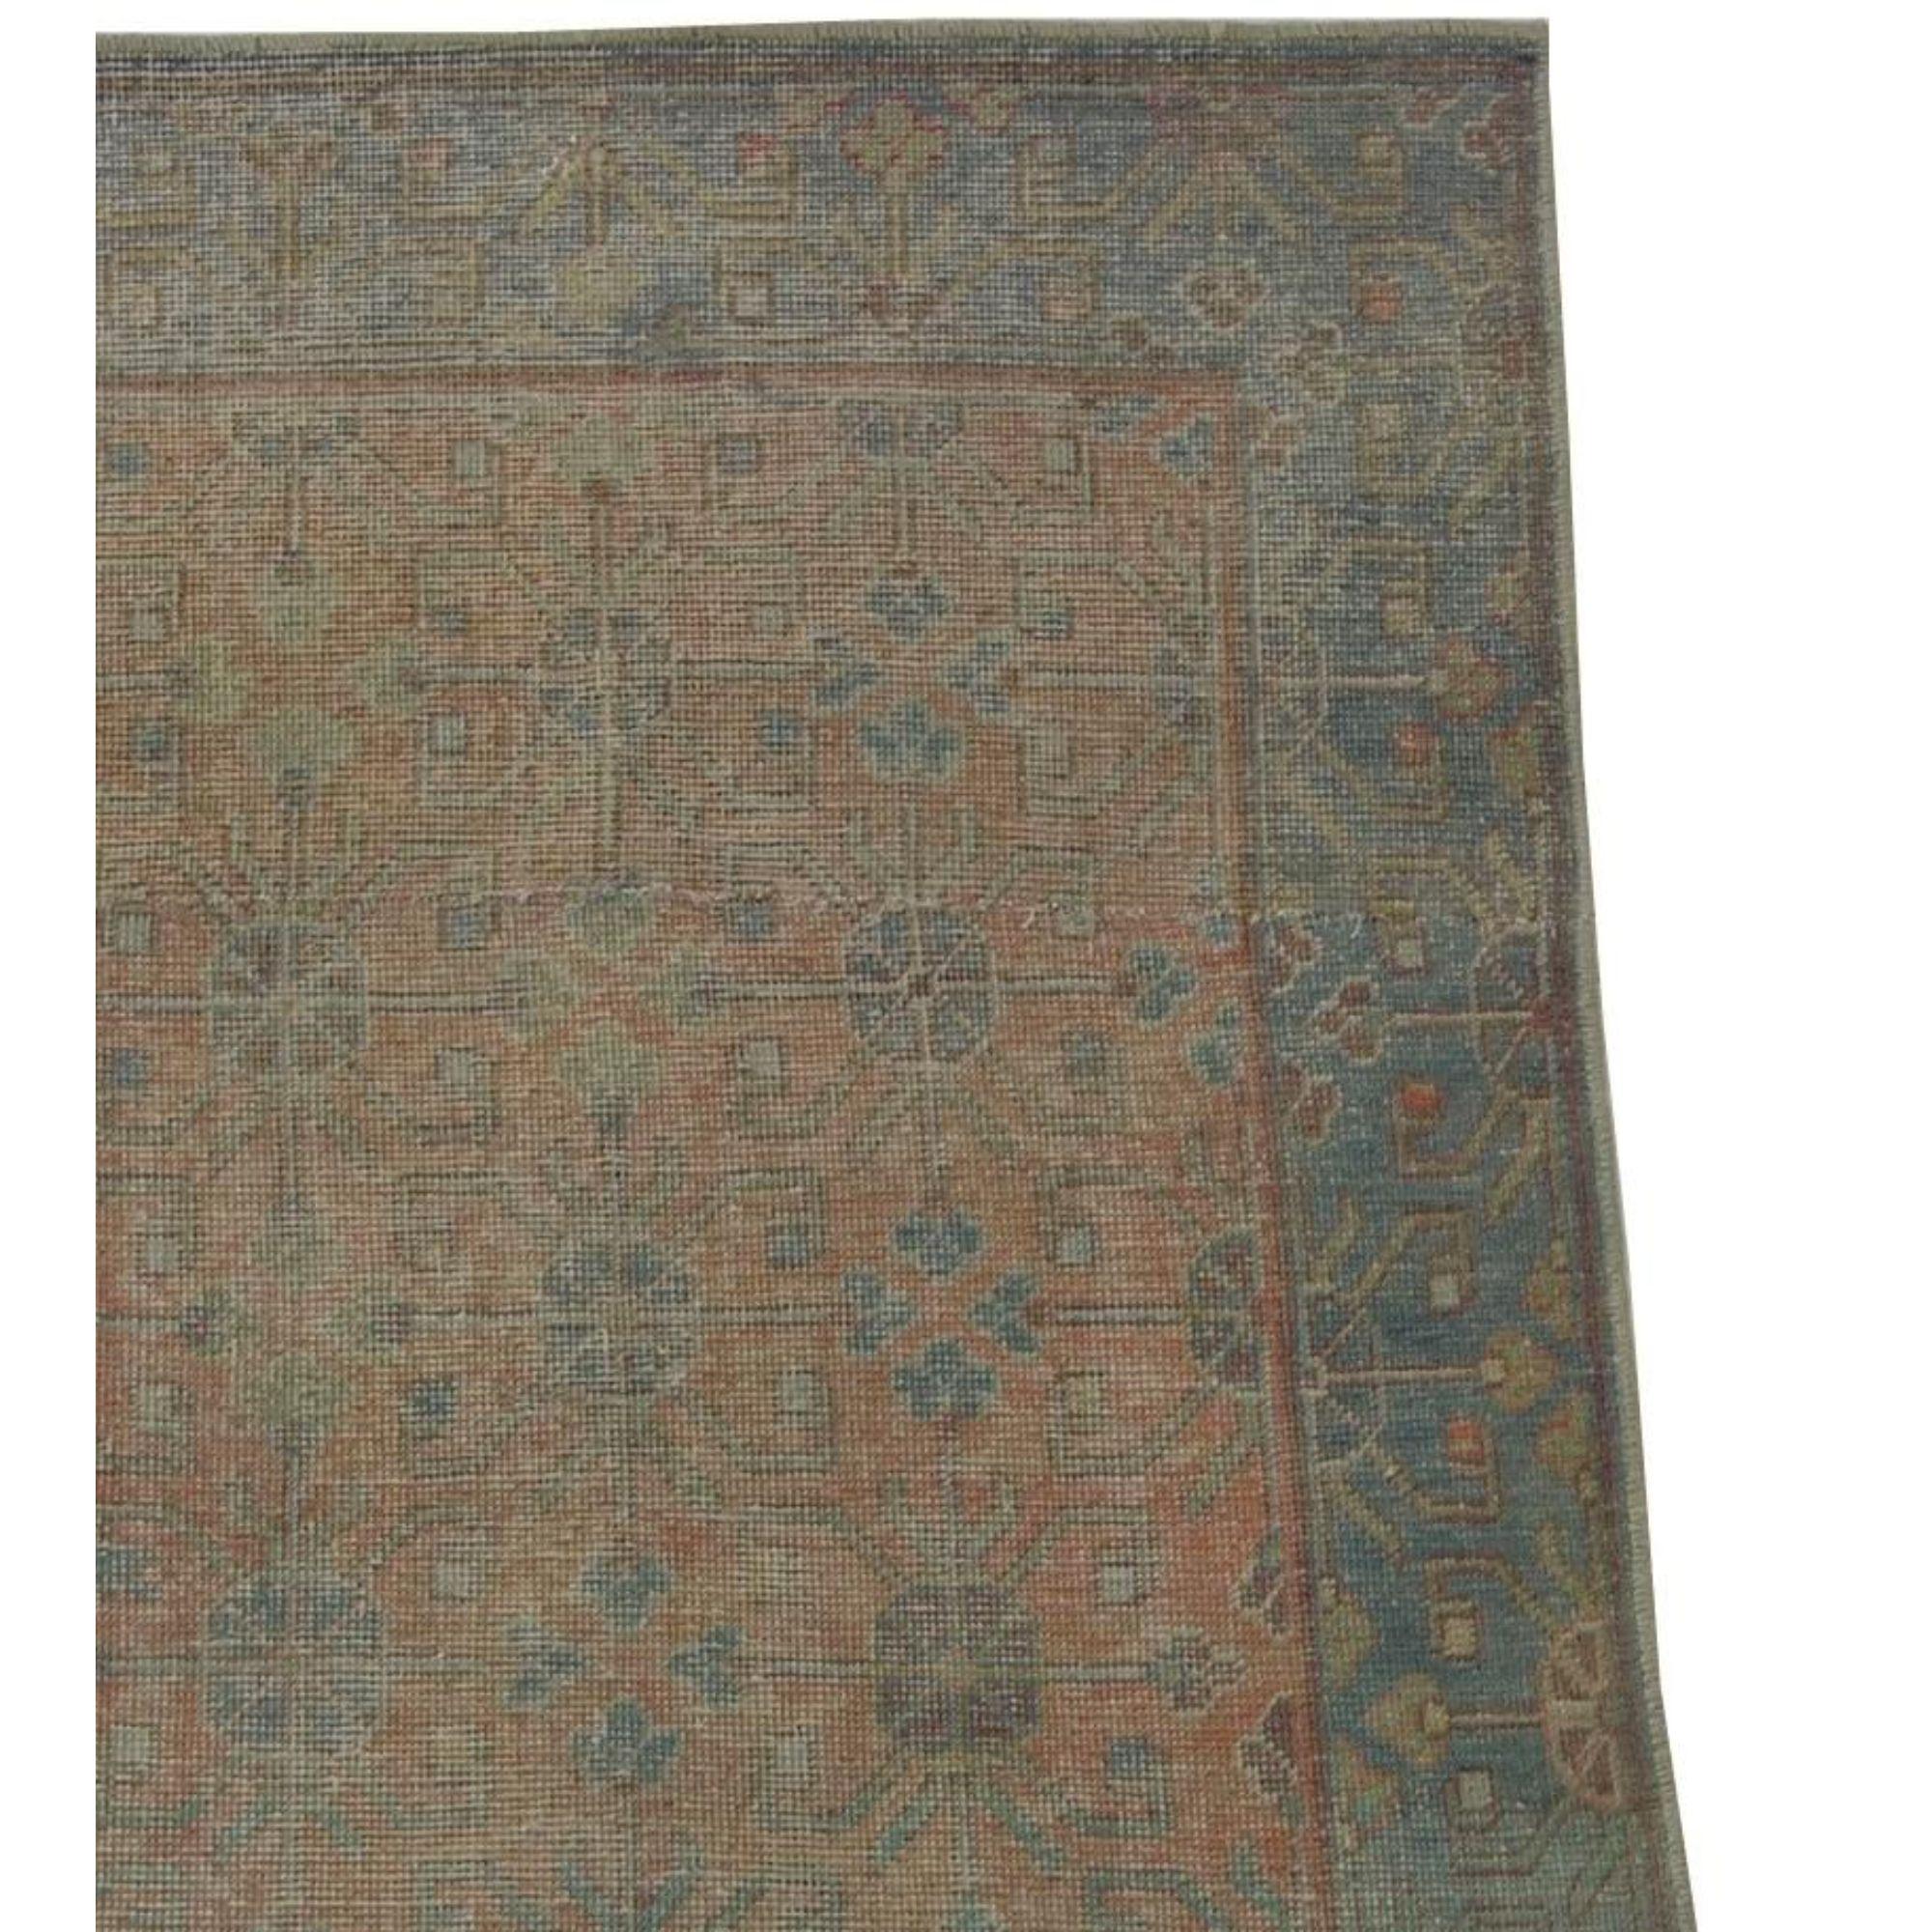 Zum Verkauf steht ein antiker Samakhand-Teppich. Dies ist eine usbekische Stammes-Design Teppich mit einem roten Muster in der gesamten Teppich.